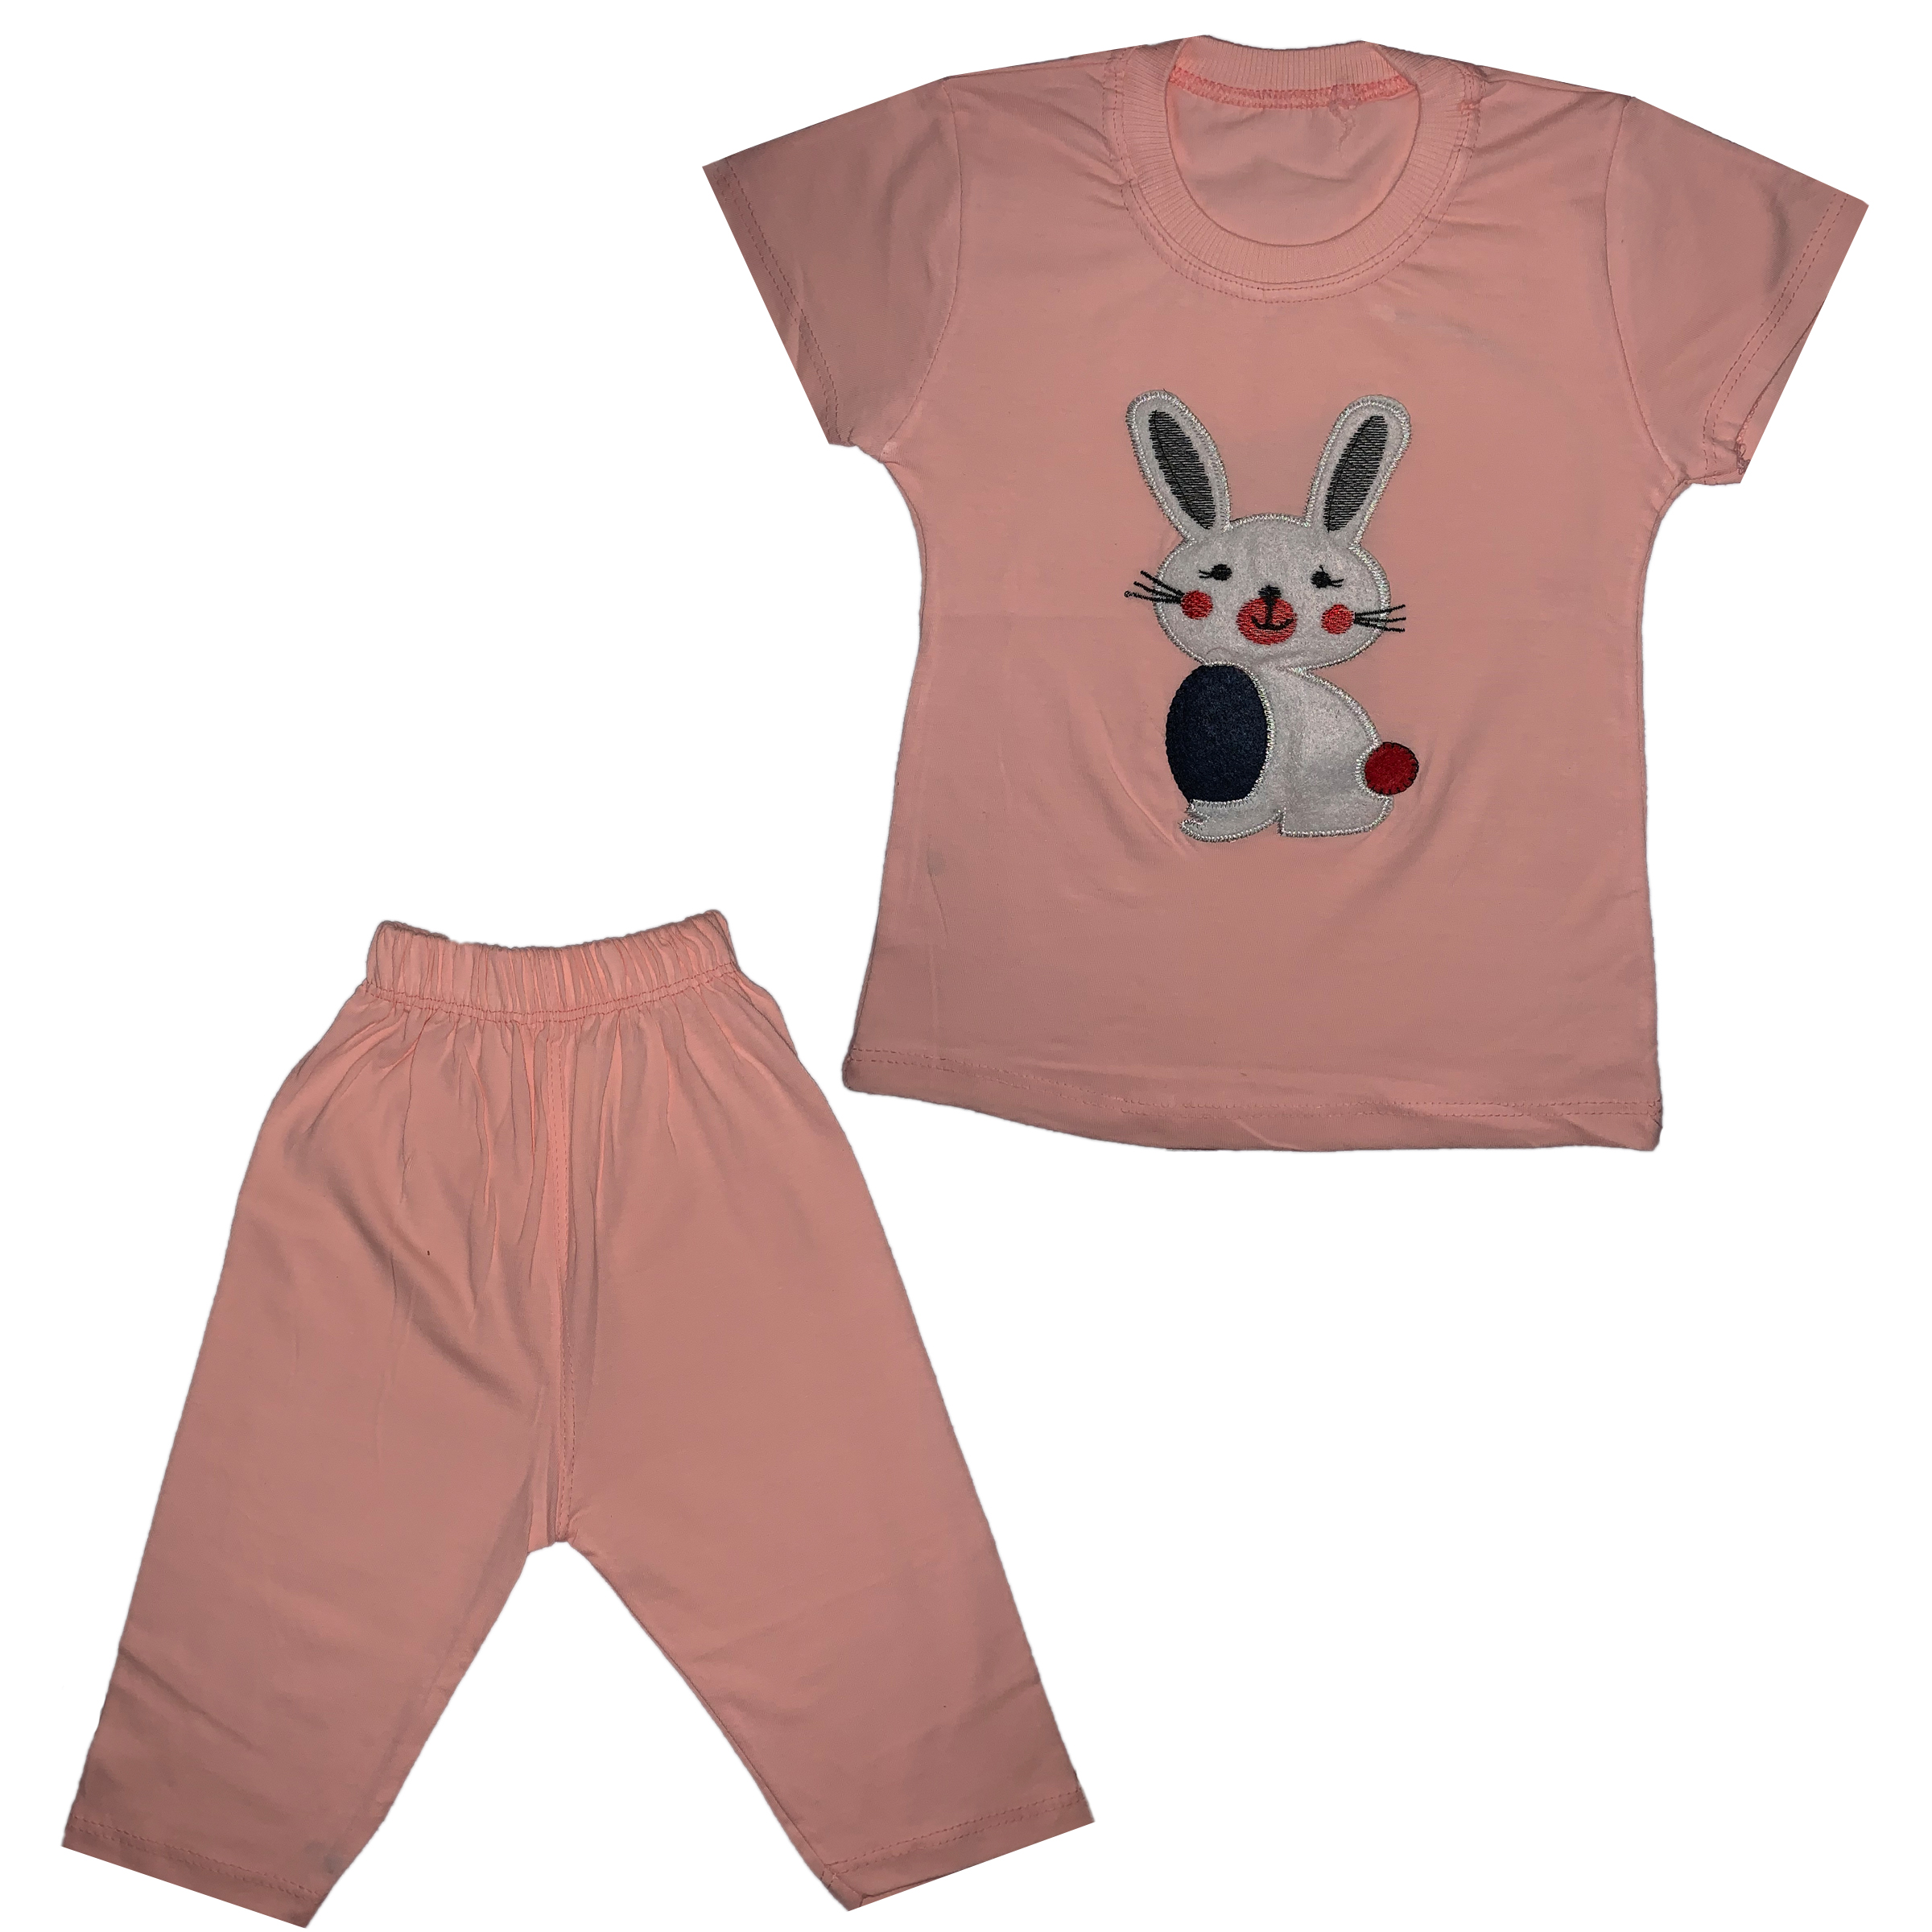 ست تی شرت و شلوارک دخترانه طرح خرگوش کد 001